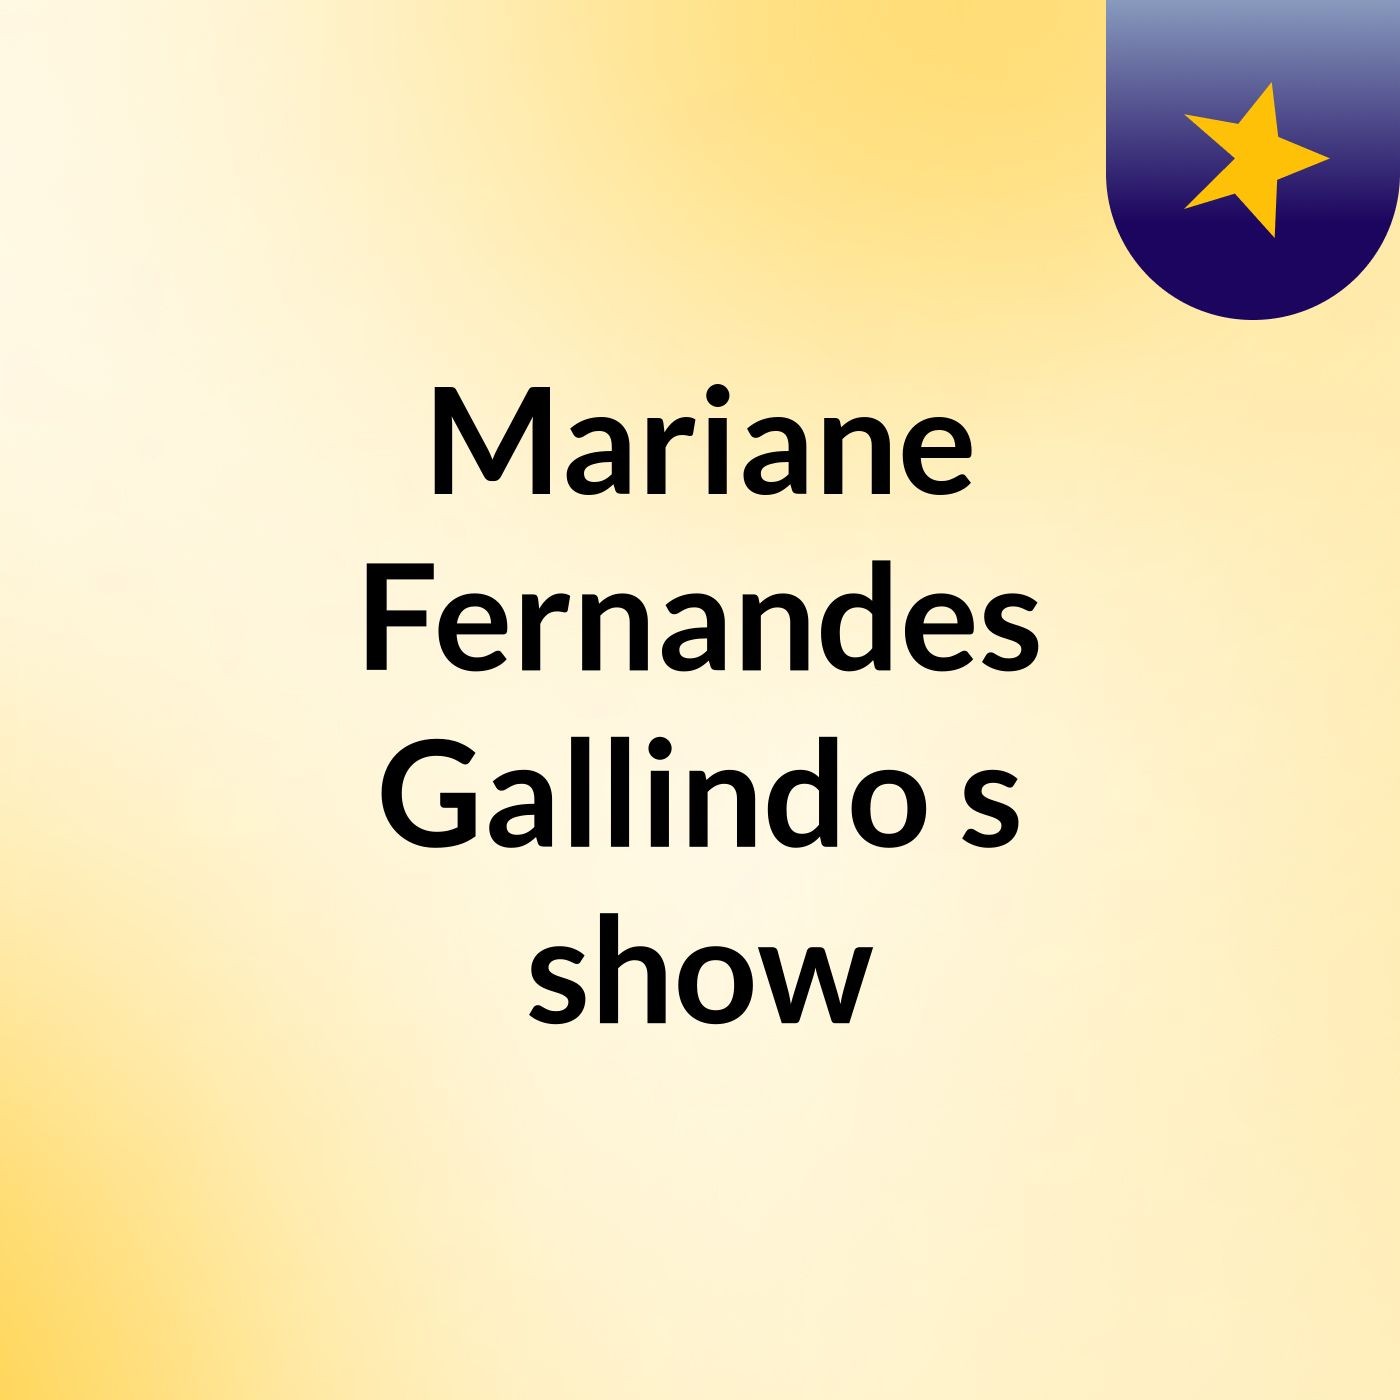 Mariane Fernandes Gallindo's show